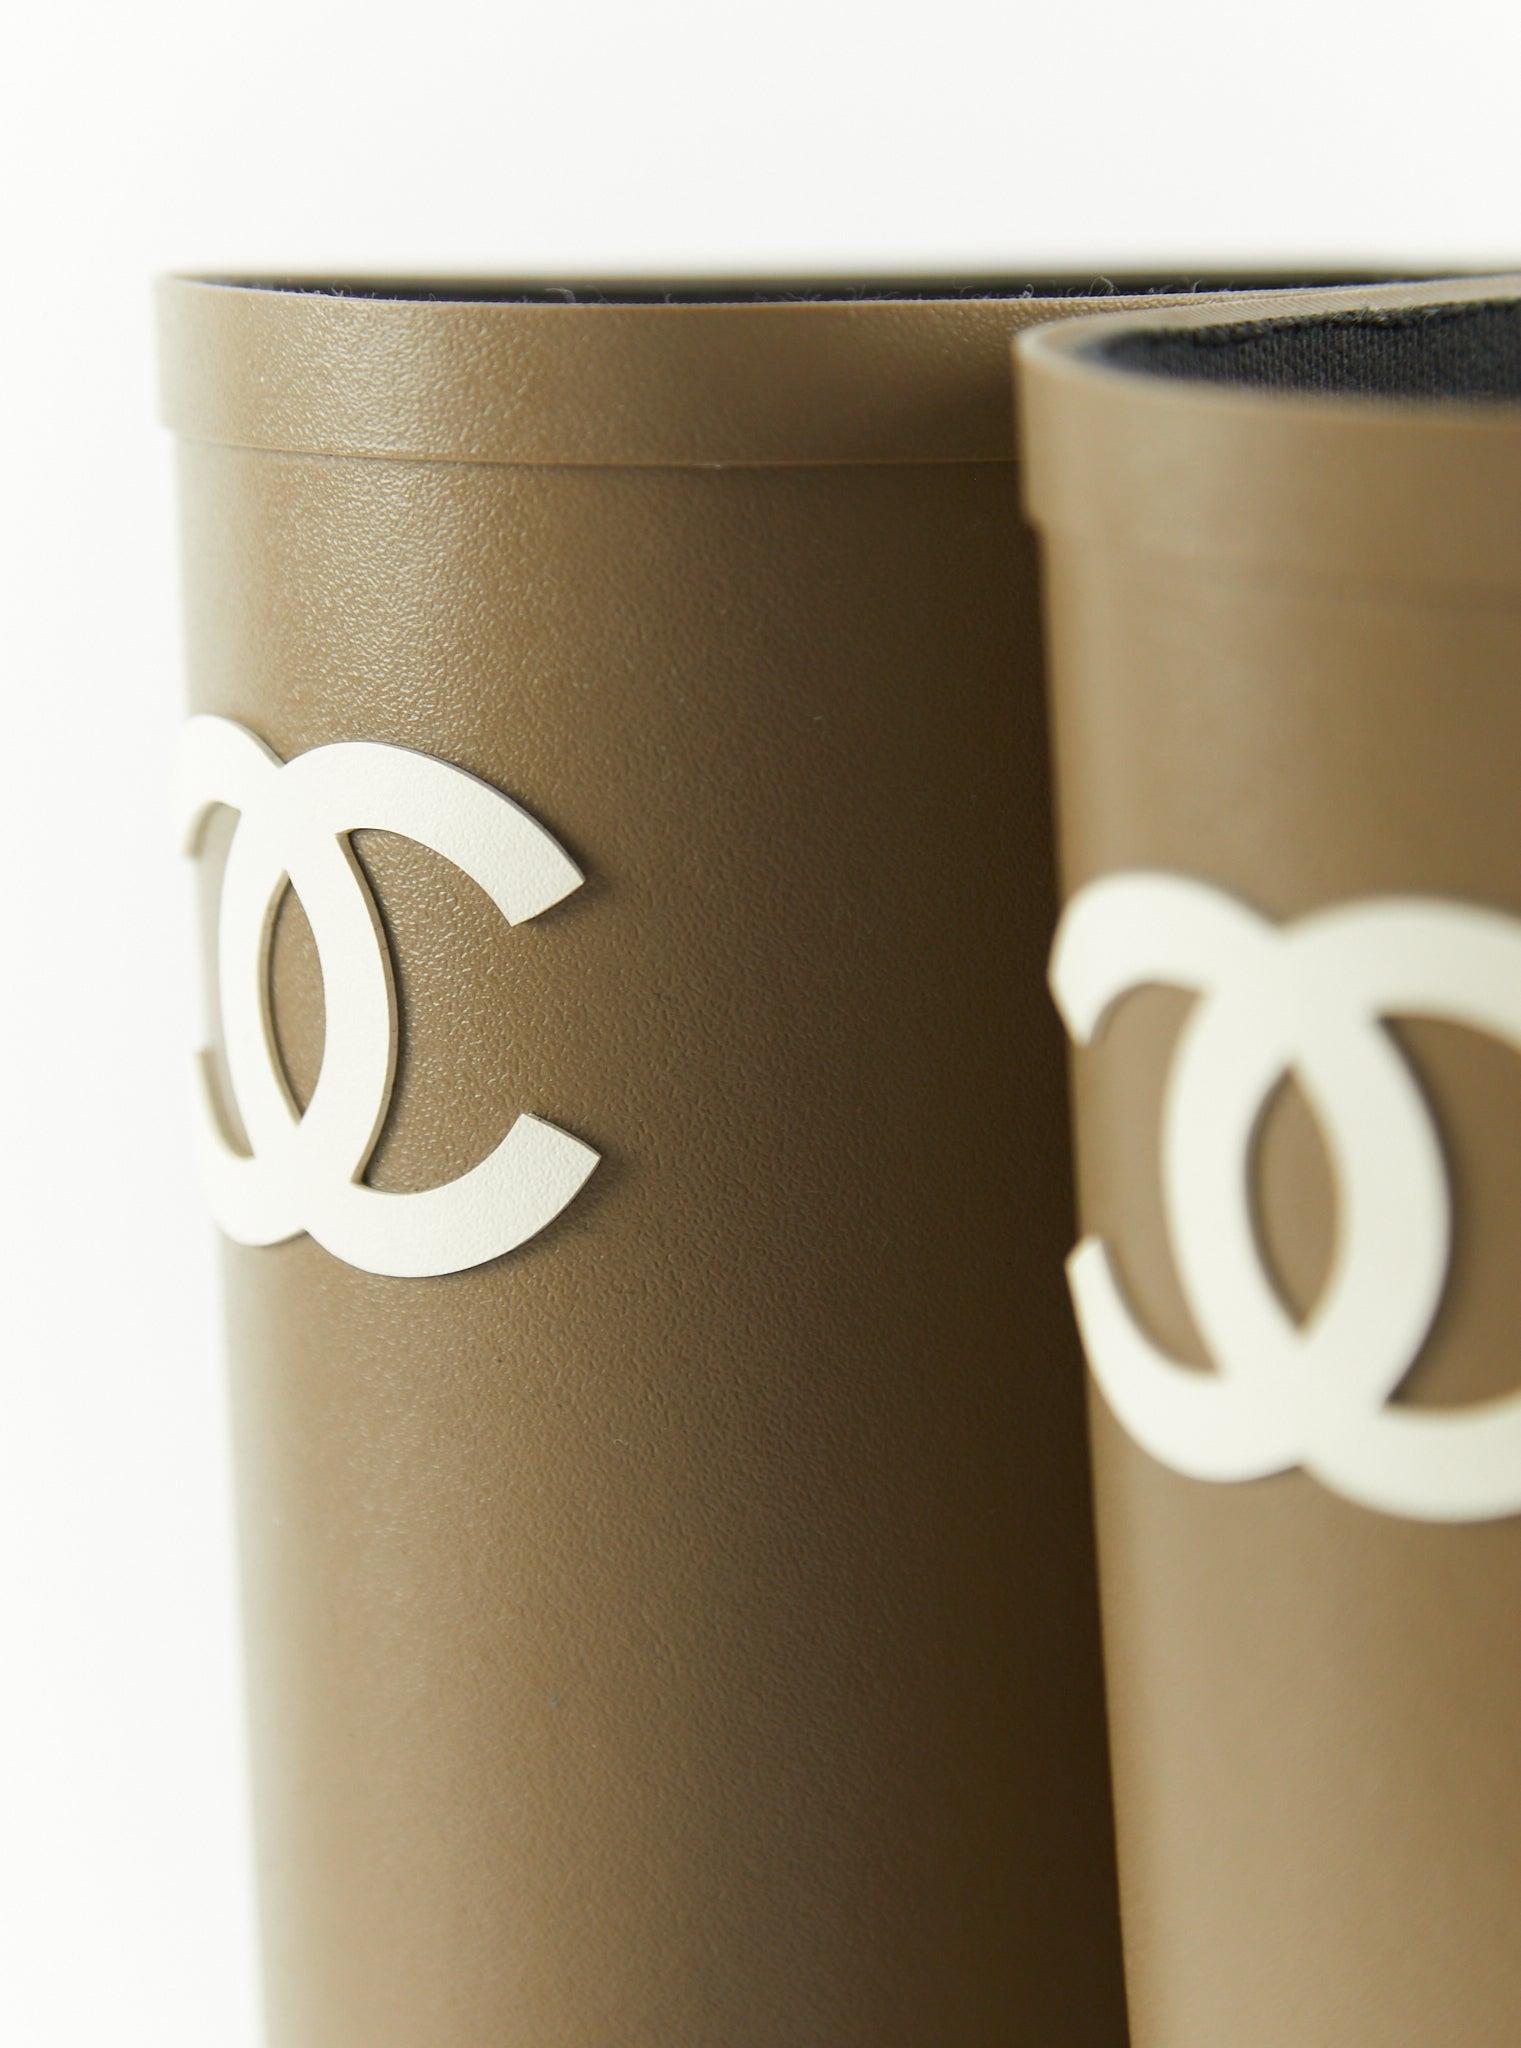 Chanel Gummistiefel in Khaki

Absatzhöhe: 25 mm 

Größe 38